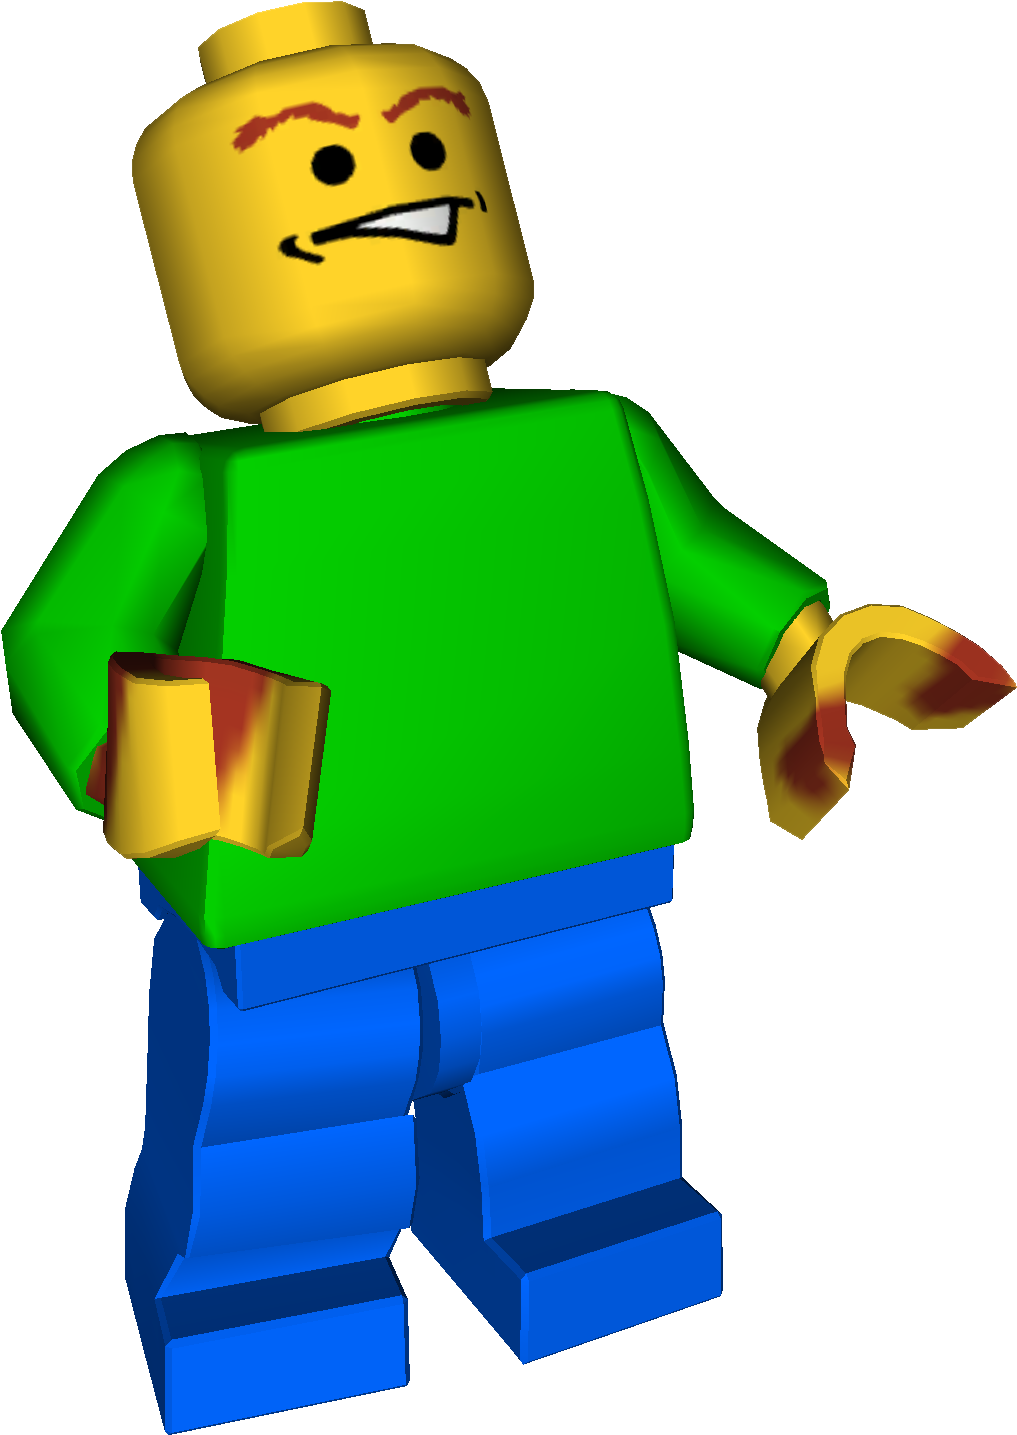 Smiling Lego Figure3 D Model PNG image